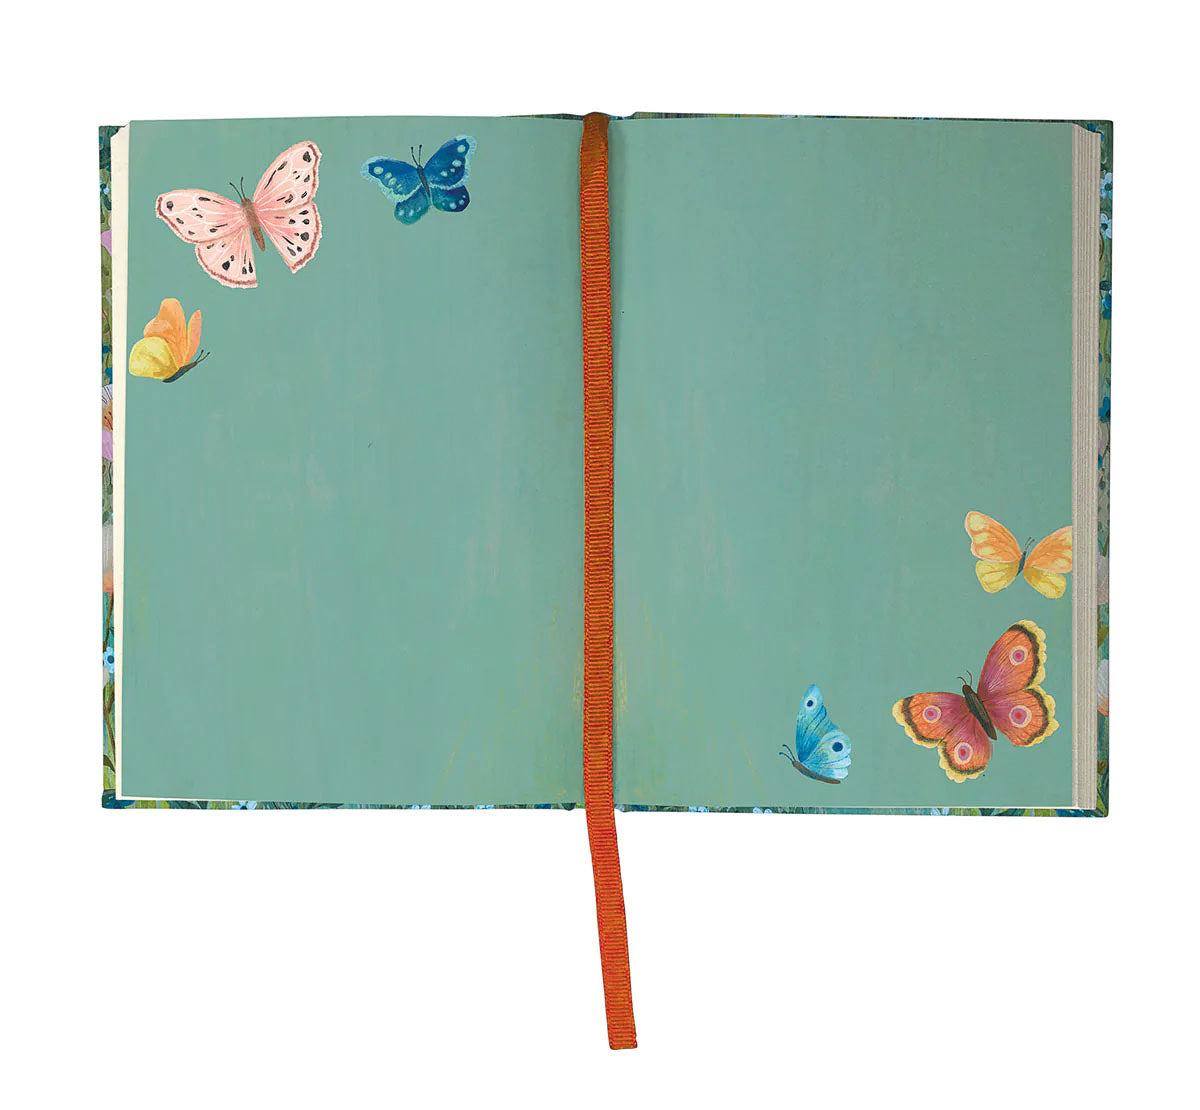 Geïllustreerd notitieboek Dreamland Butterflies - Roger la Borde